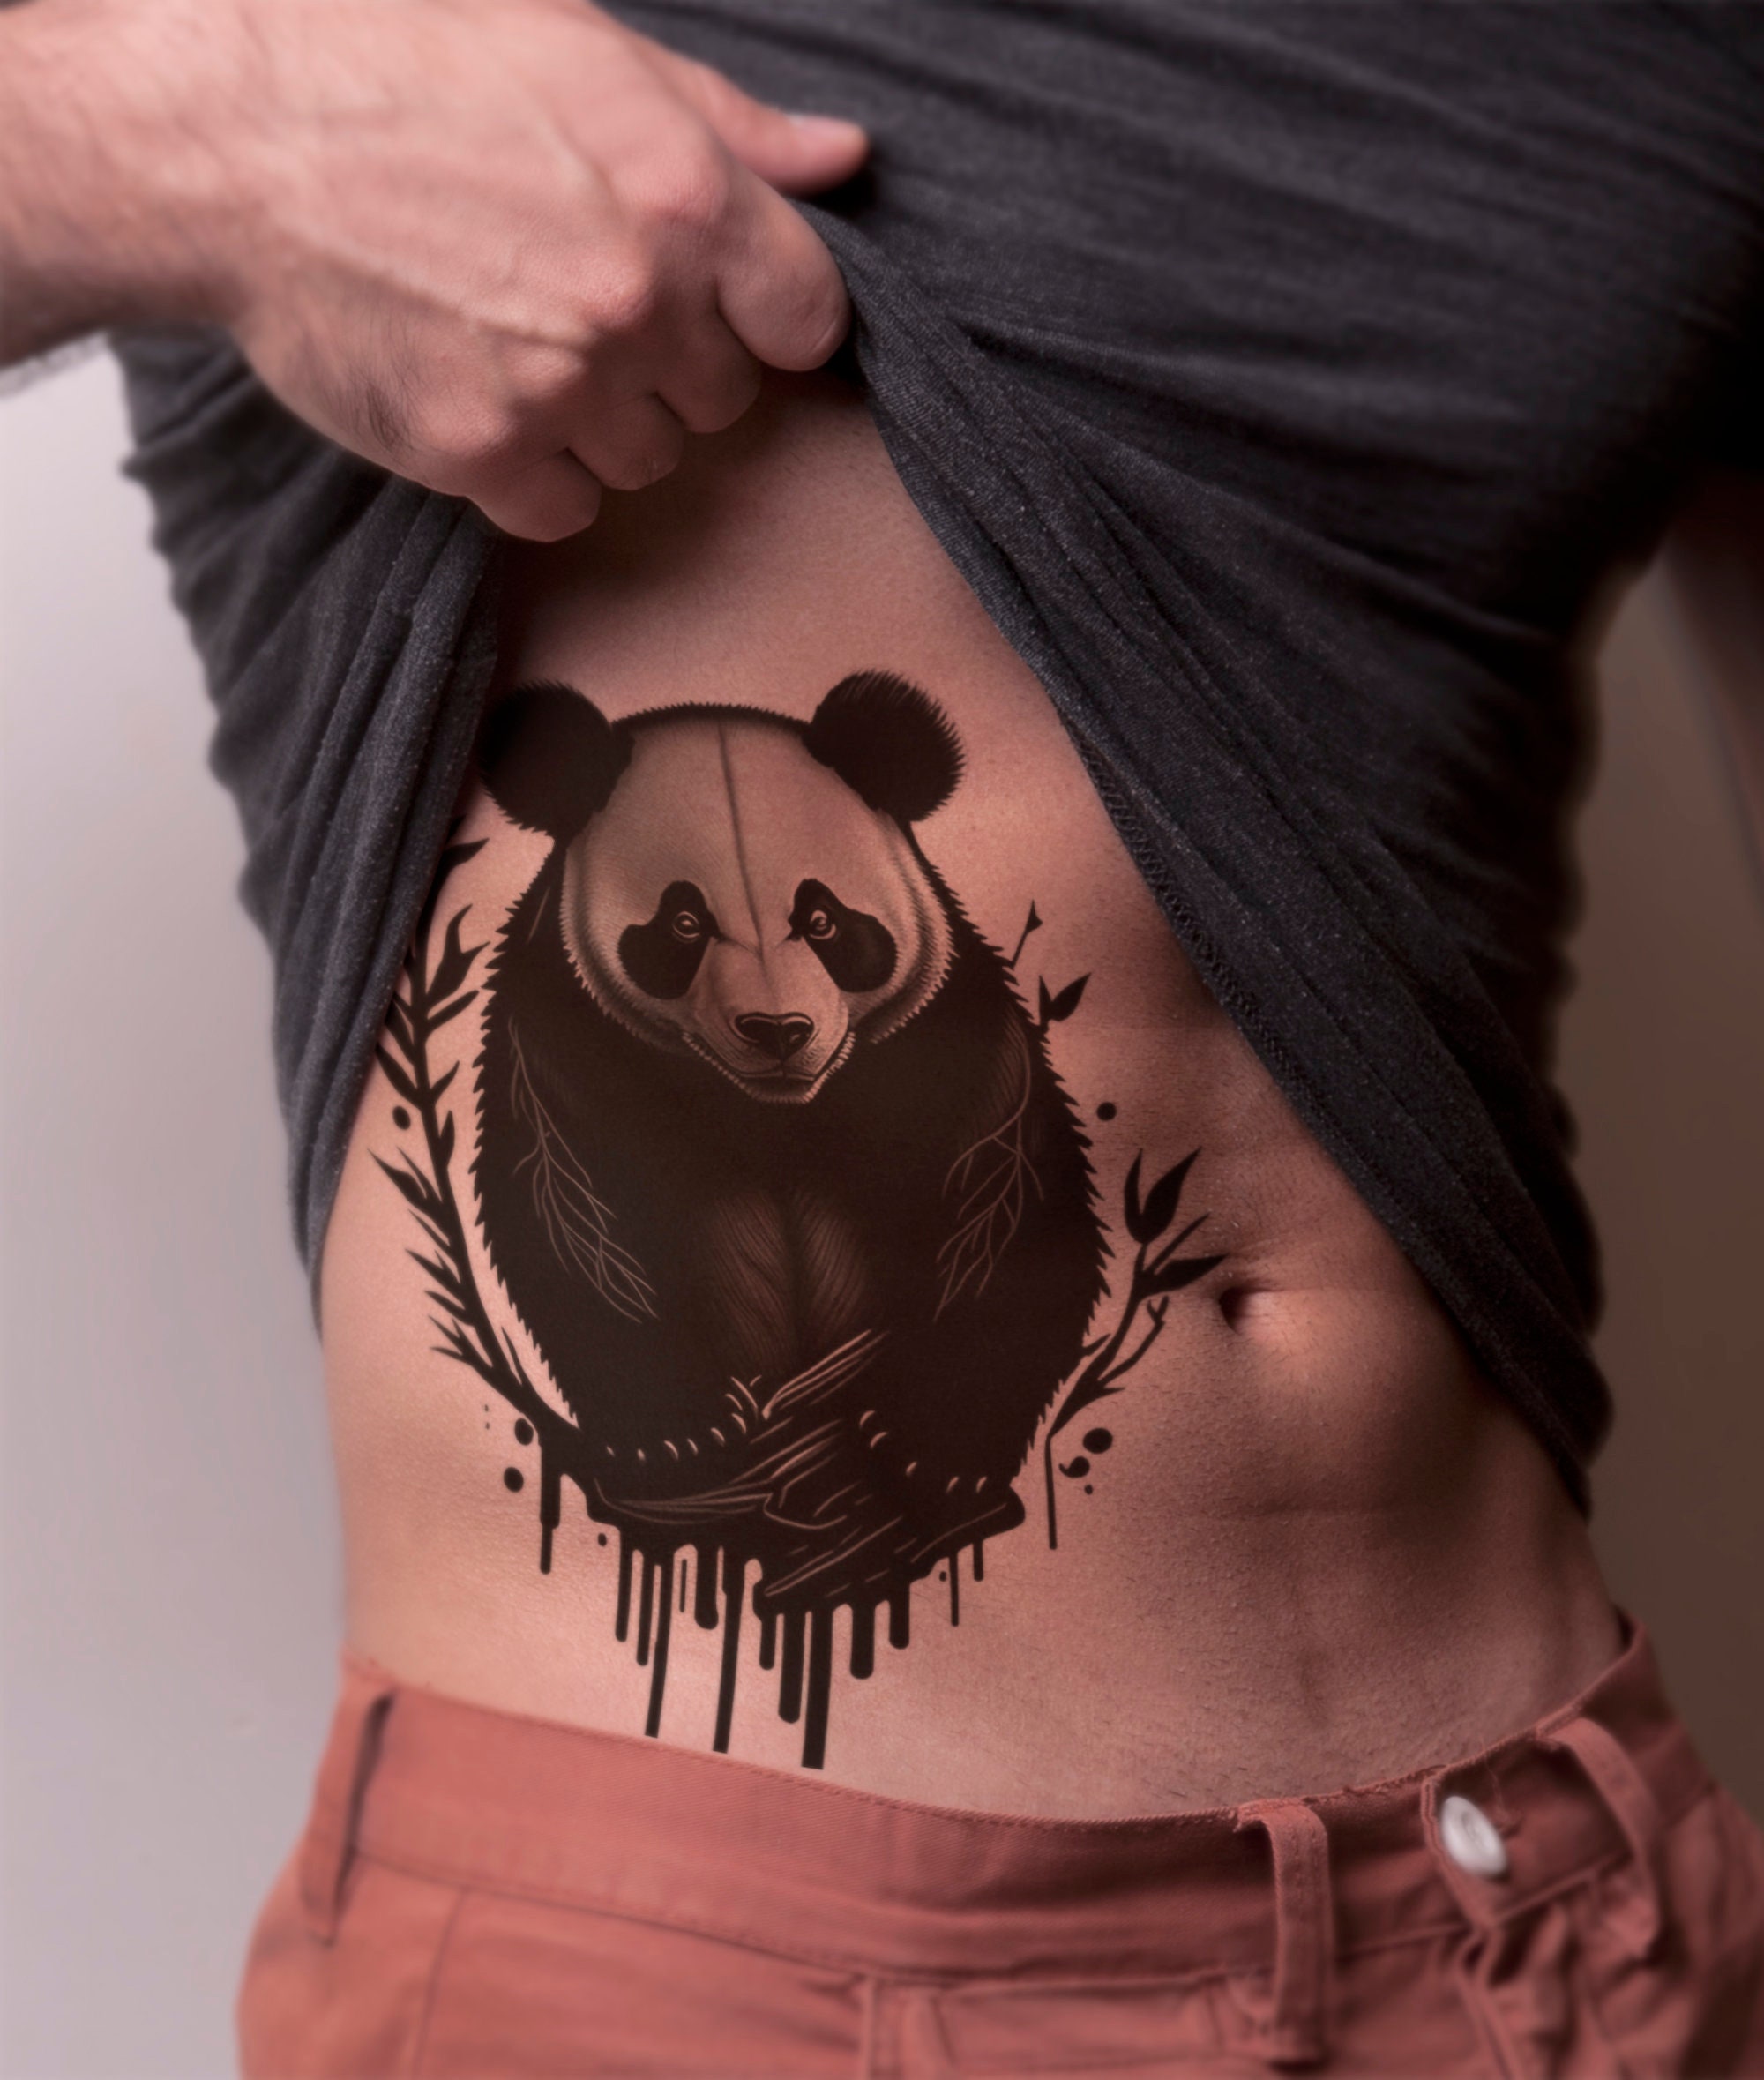 Tattoos by Chris Hold  Trash panda kabob skewered for Yanik 